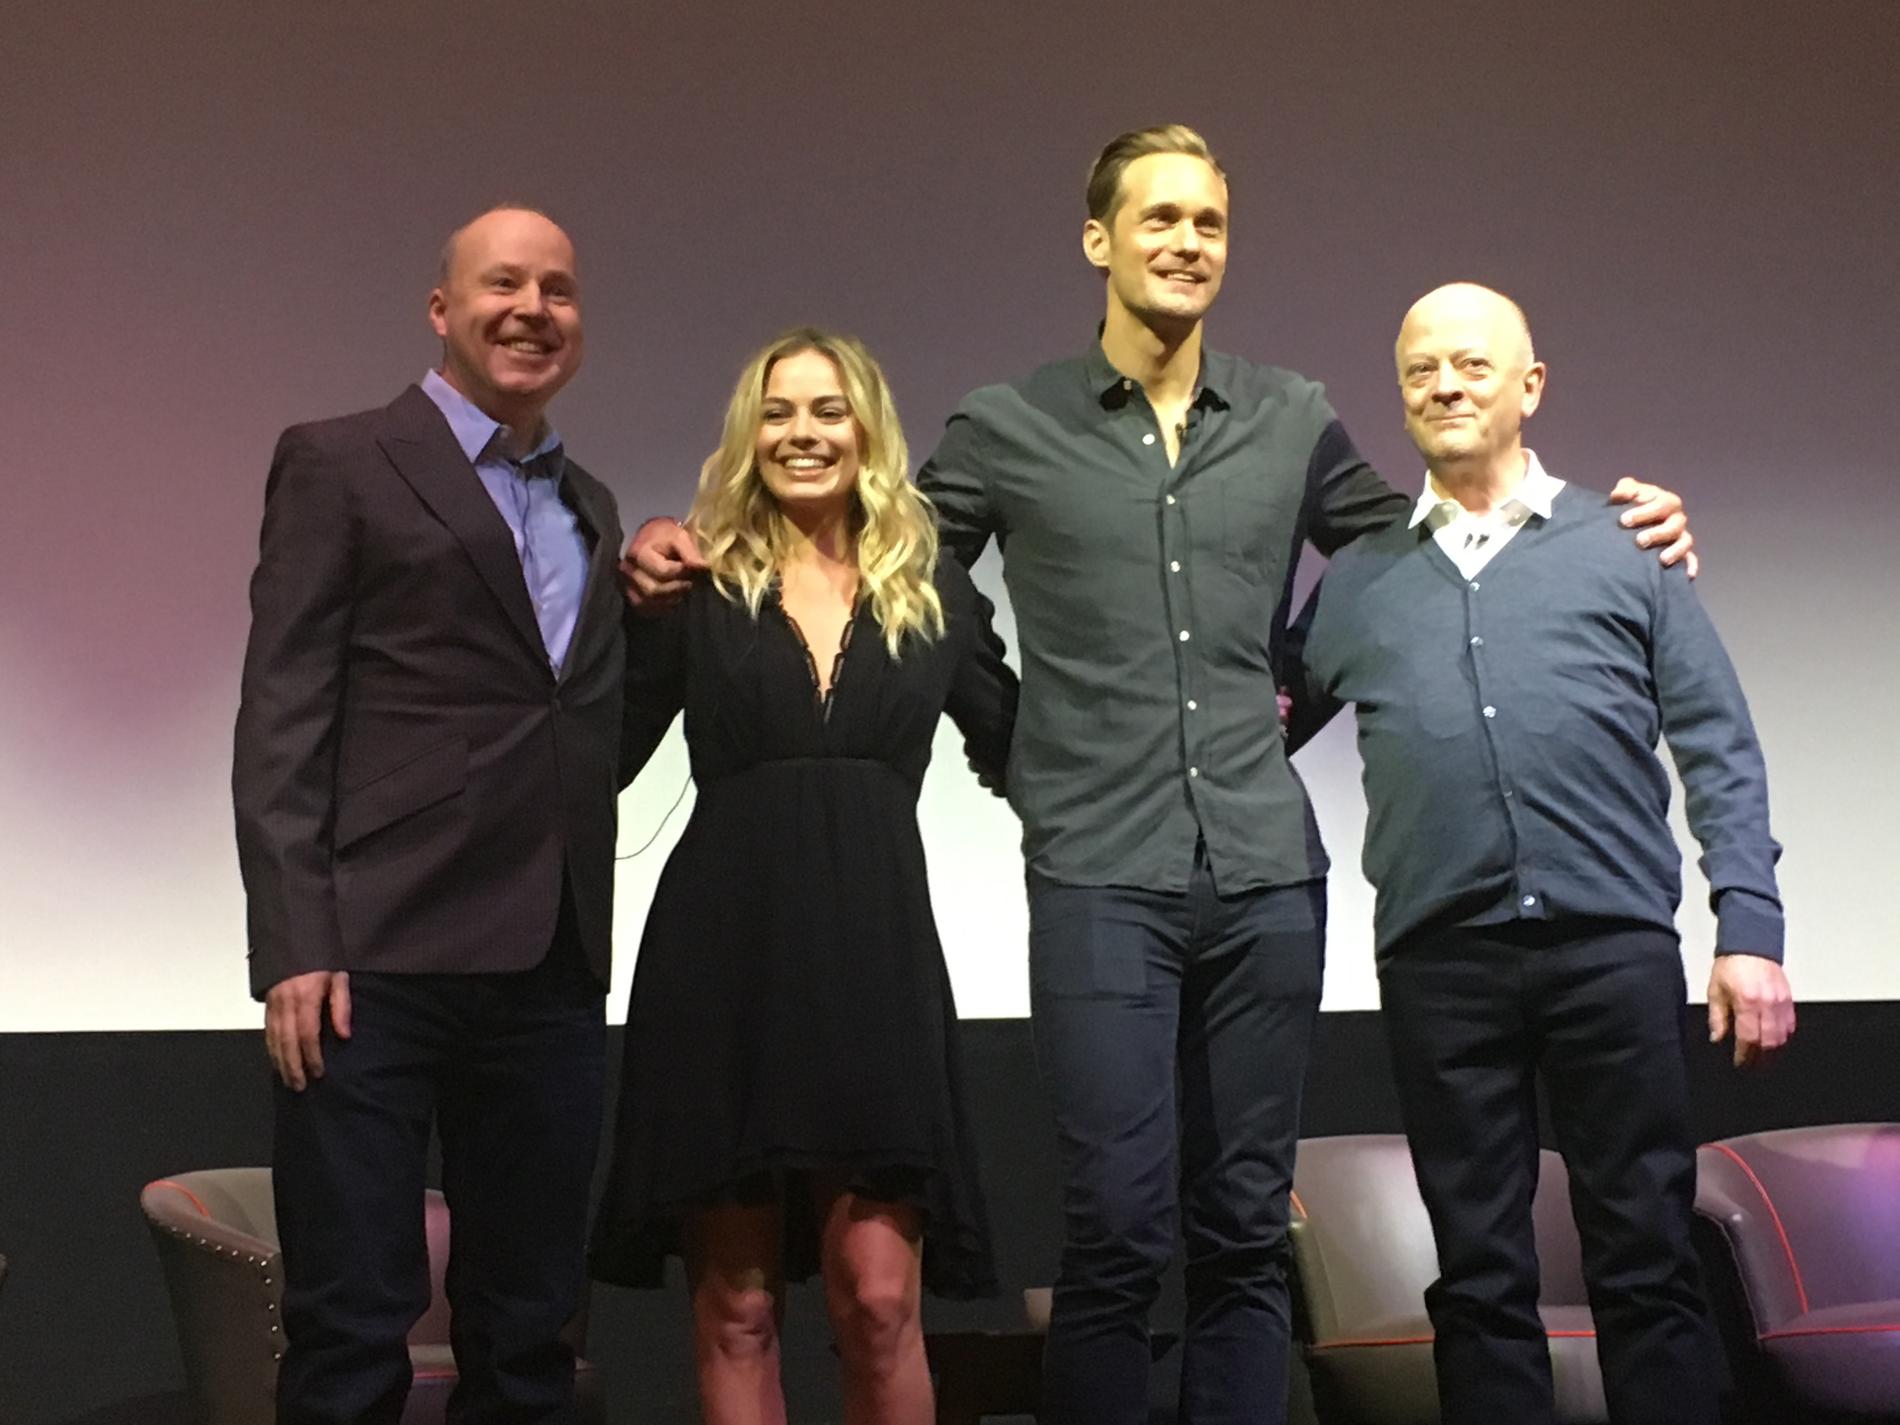 Från vänster: David Yates, regissör, Margot Robbie, Alexander Skarsgård, David Barron, producent.